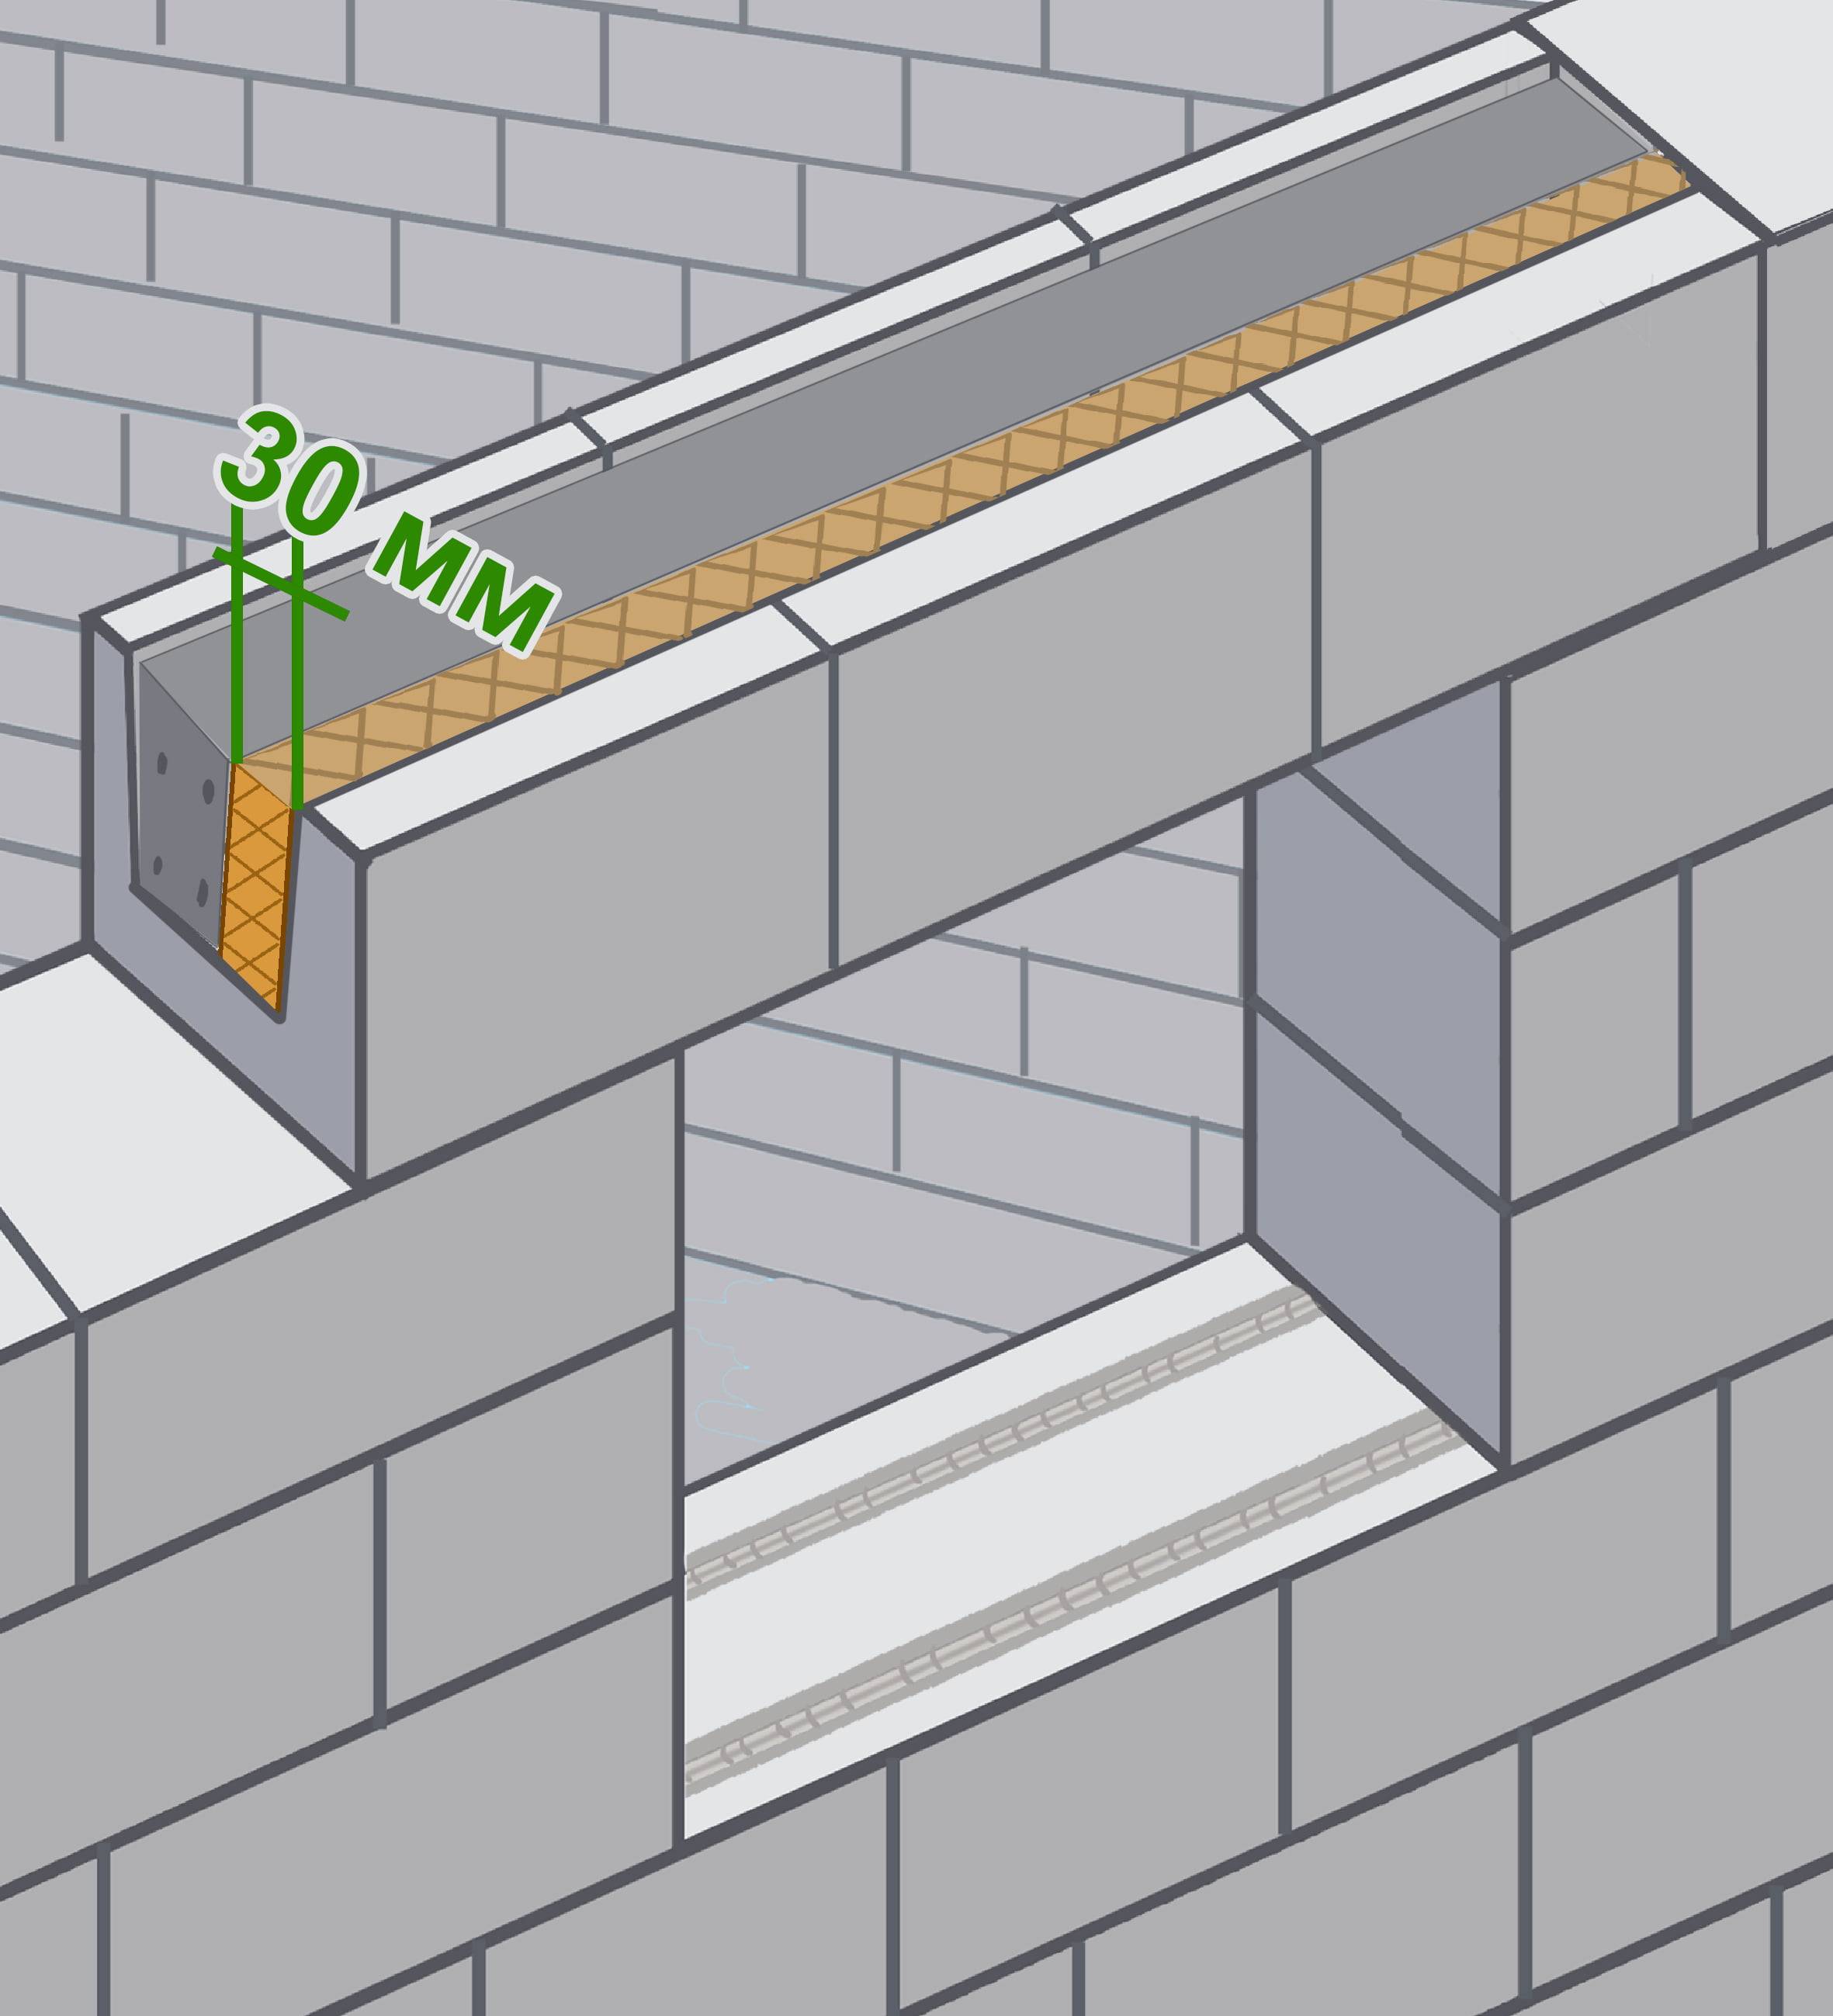 Перемычки для газобетонных блоков над окнами в доме: размеры, опирание, как сделать своими руками